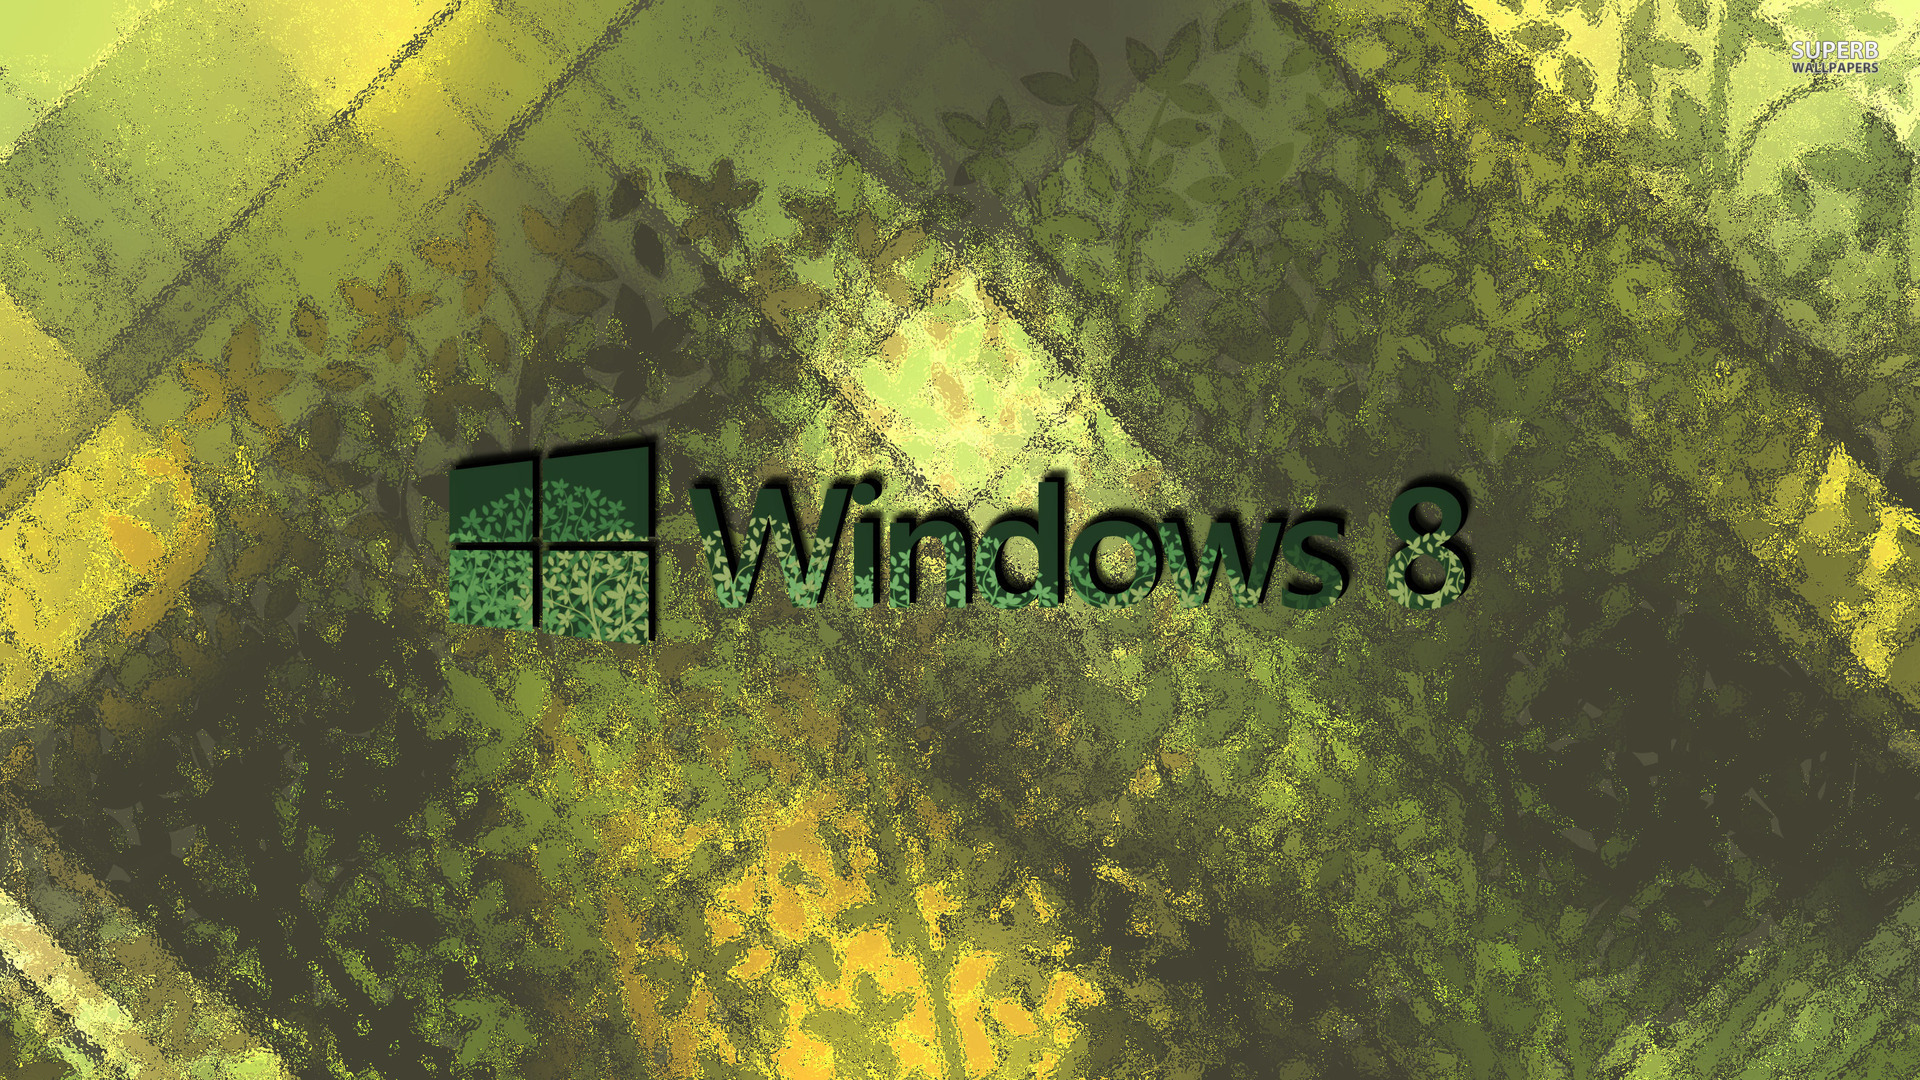 windows 8 background green